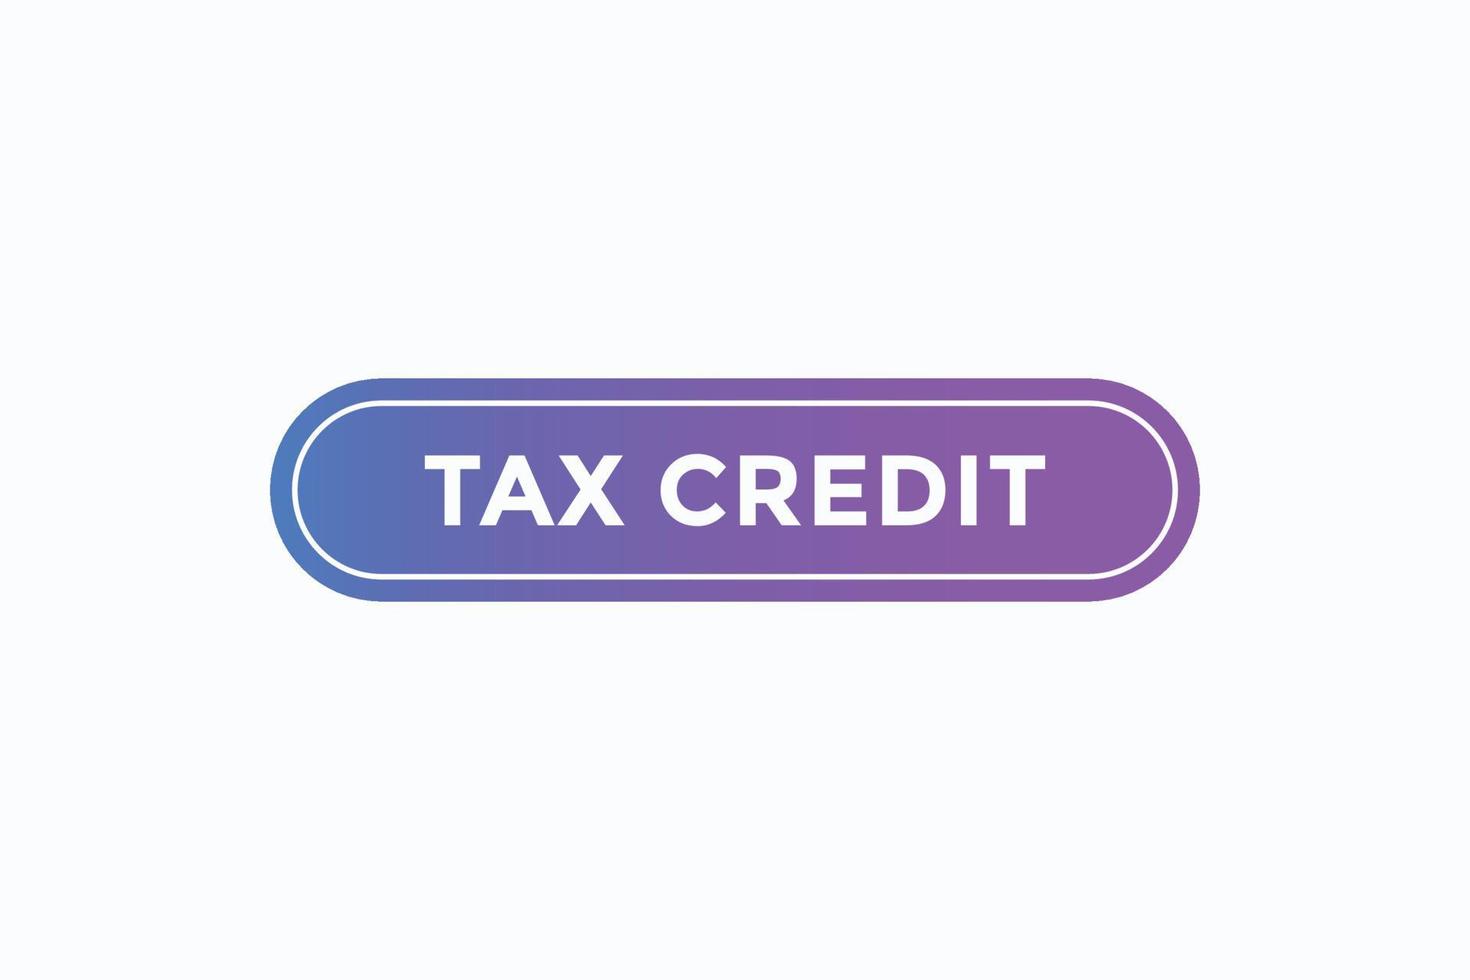 crédit d'impôt bouton vectors.sign étiquette bulle crédit d'impôt vecteur